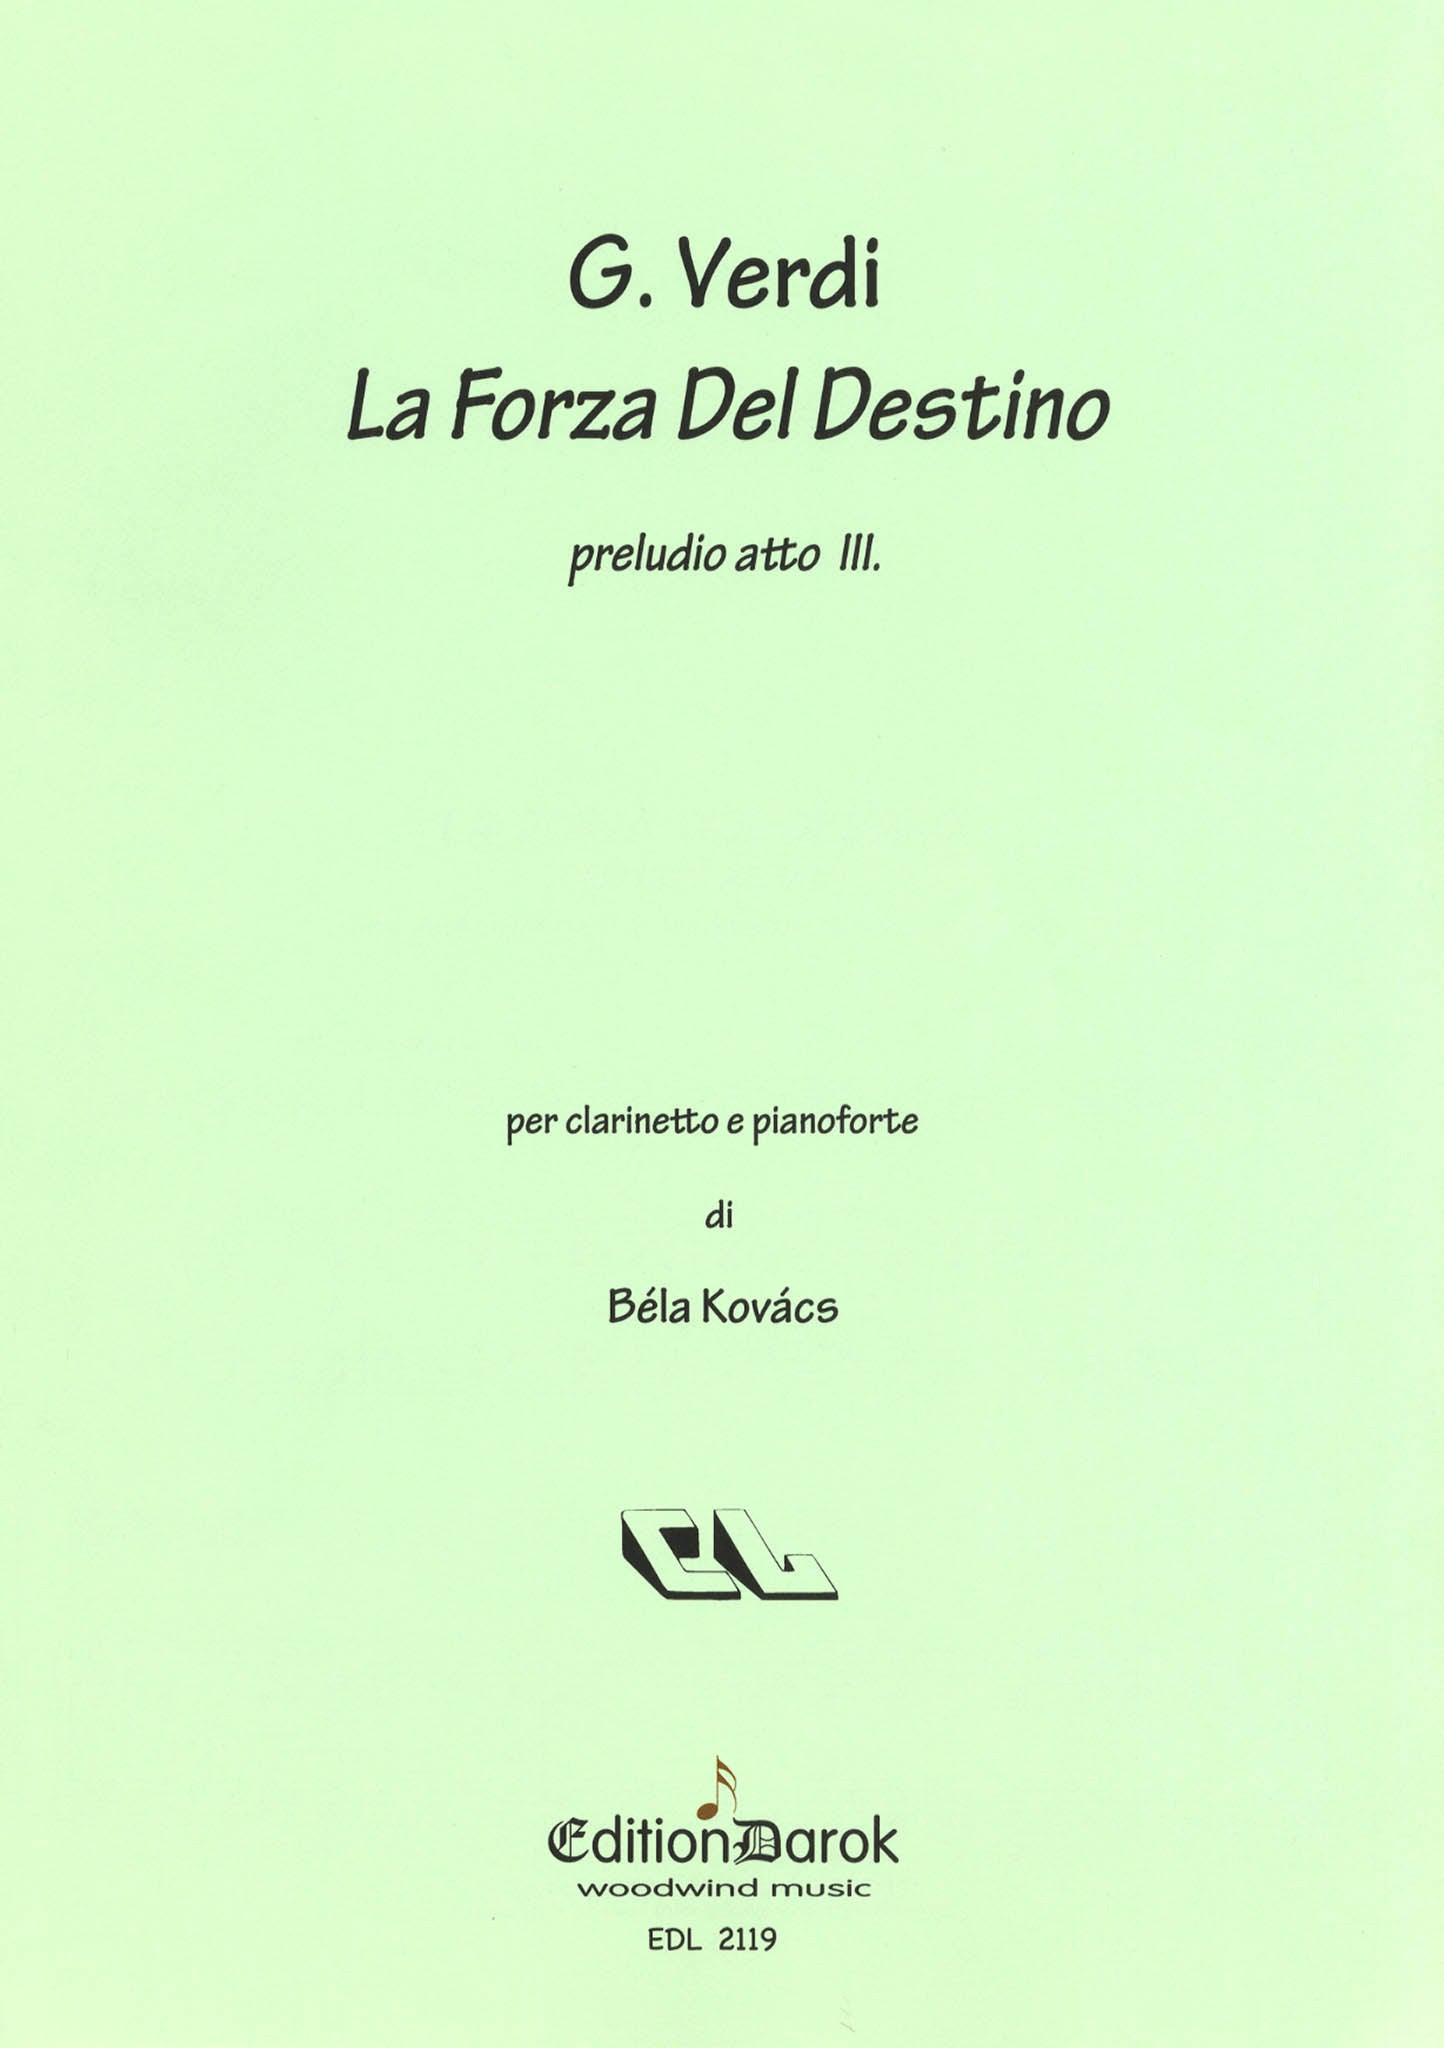 Verdi Pelude to Act 3, from ‘La Forza del Destino’ arranged for clarinet piano Kovacs cover